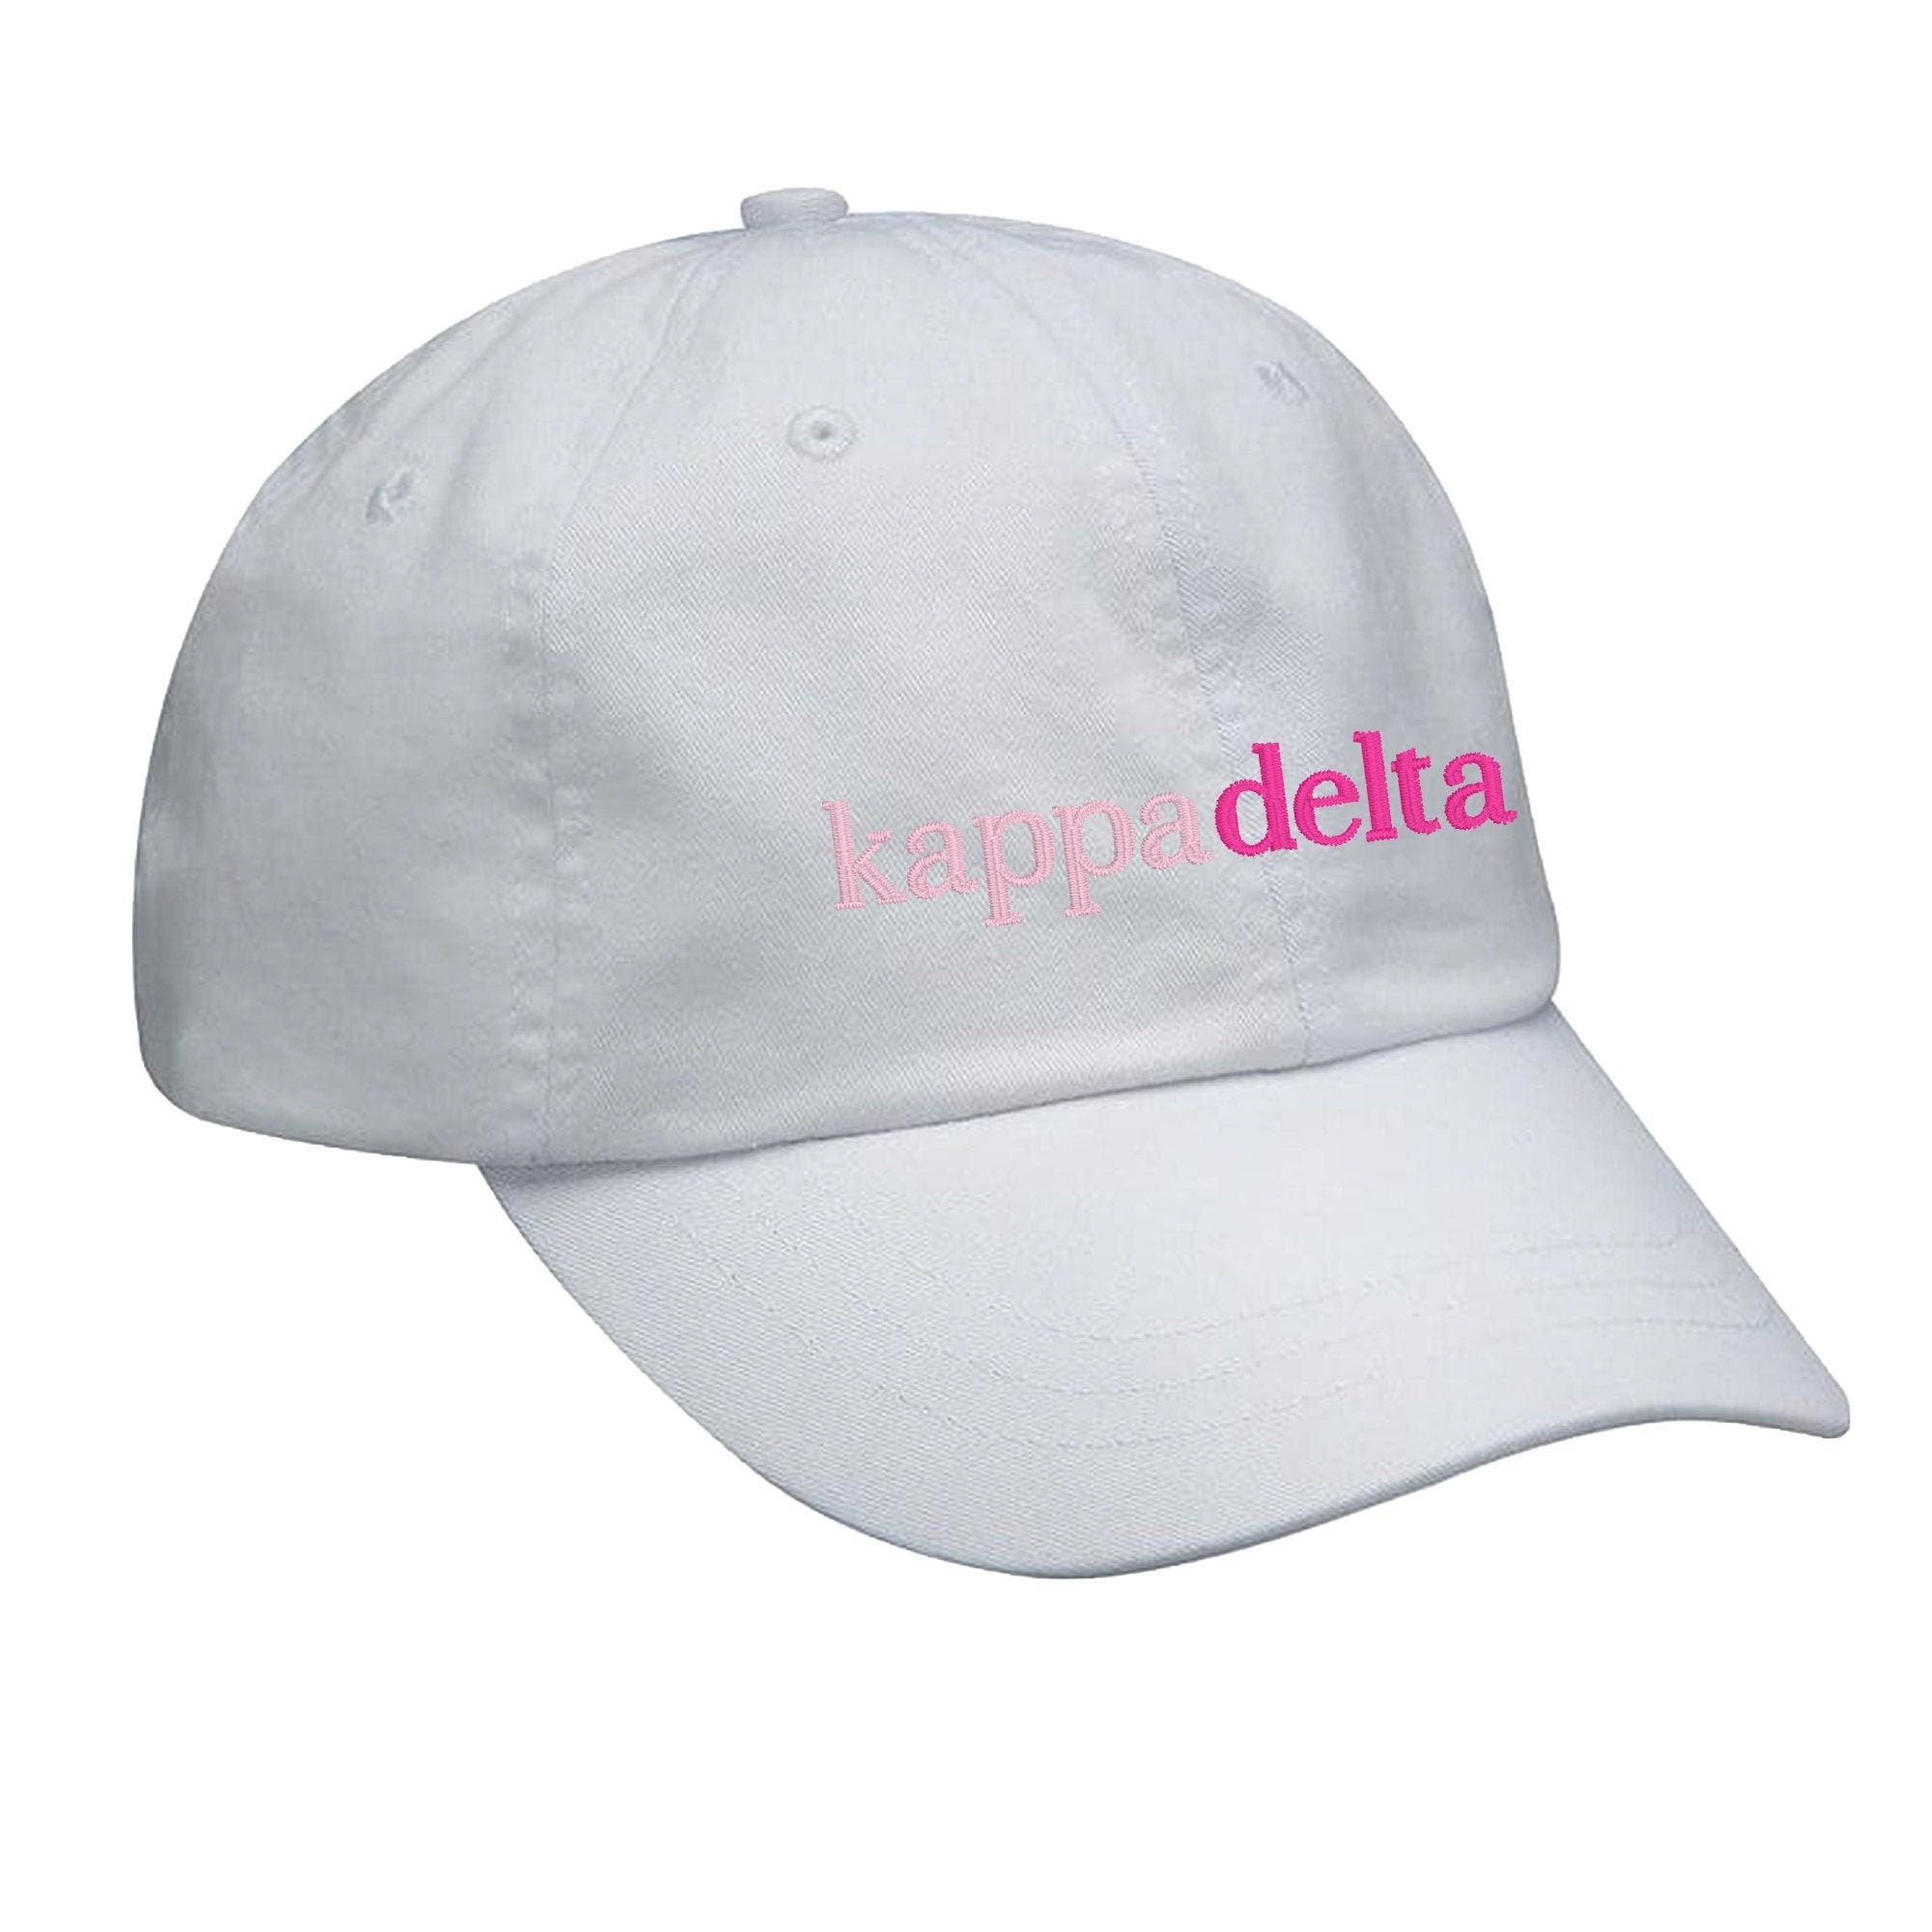 Kappa Delta Hat - Pink Gradient - Go Greek Chic